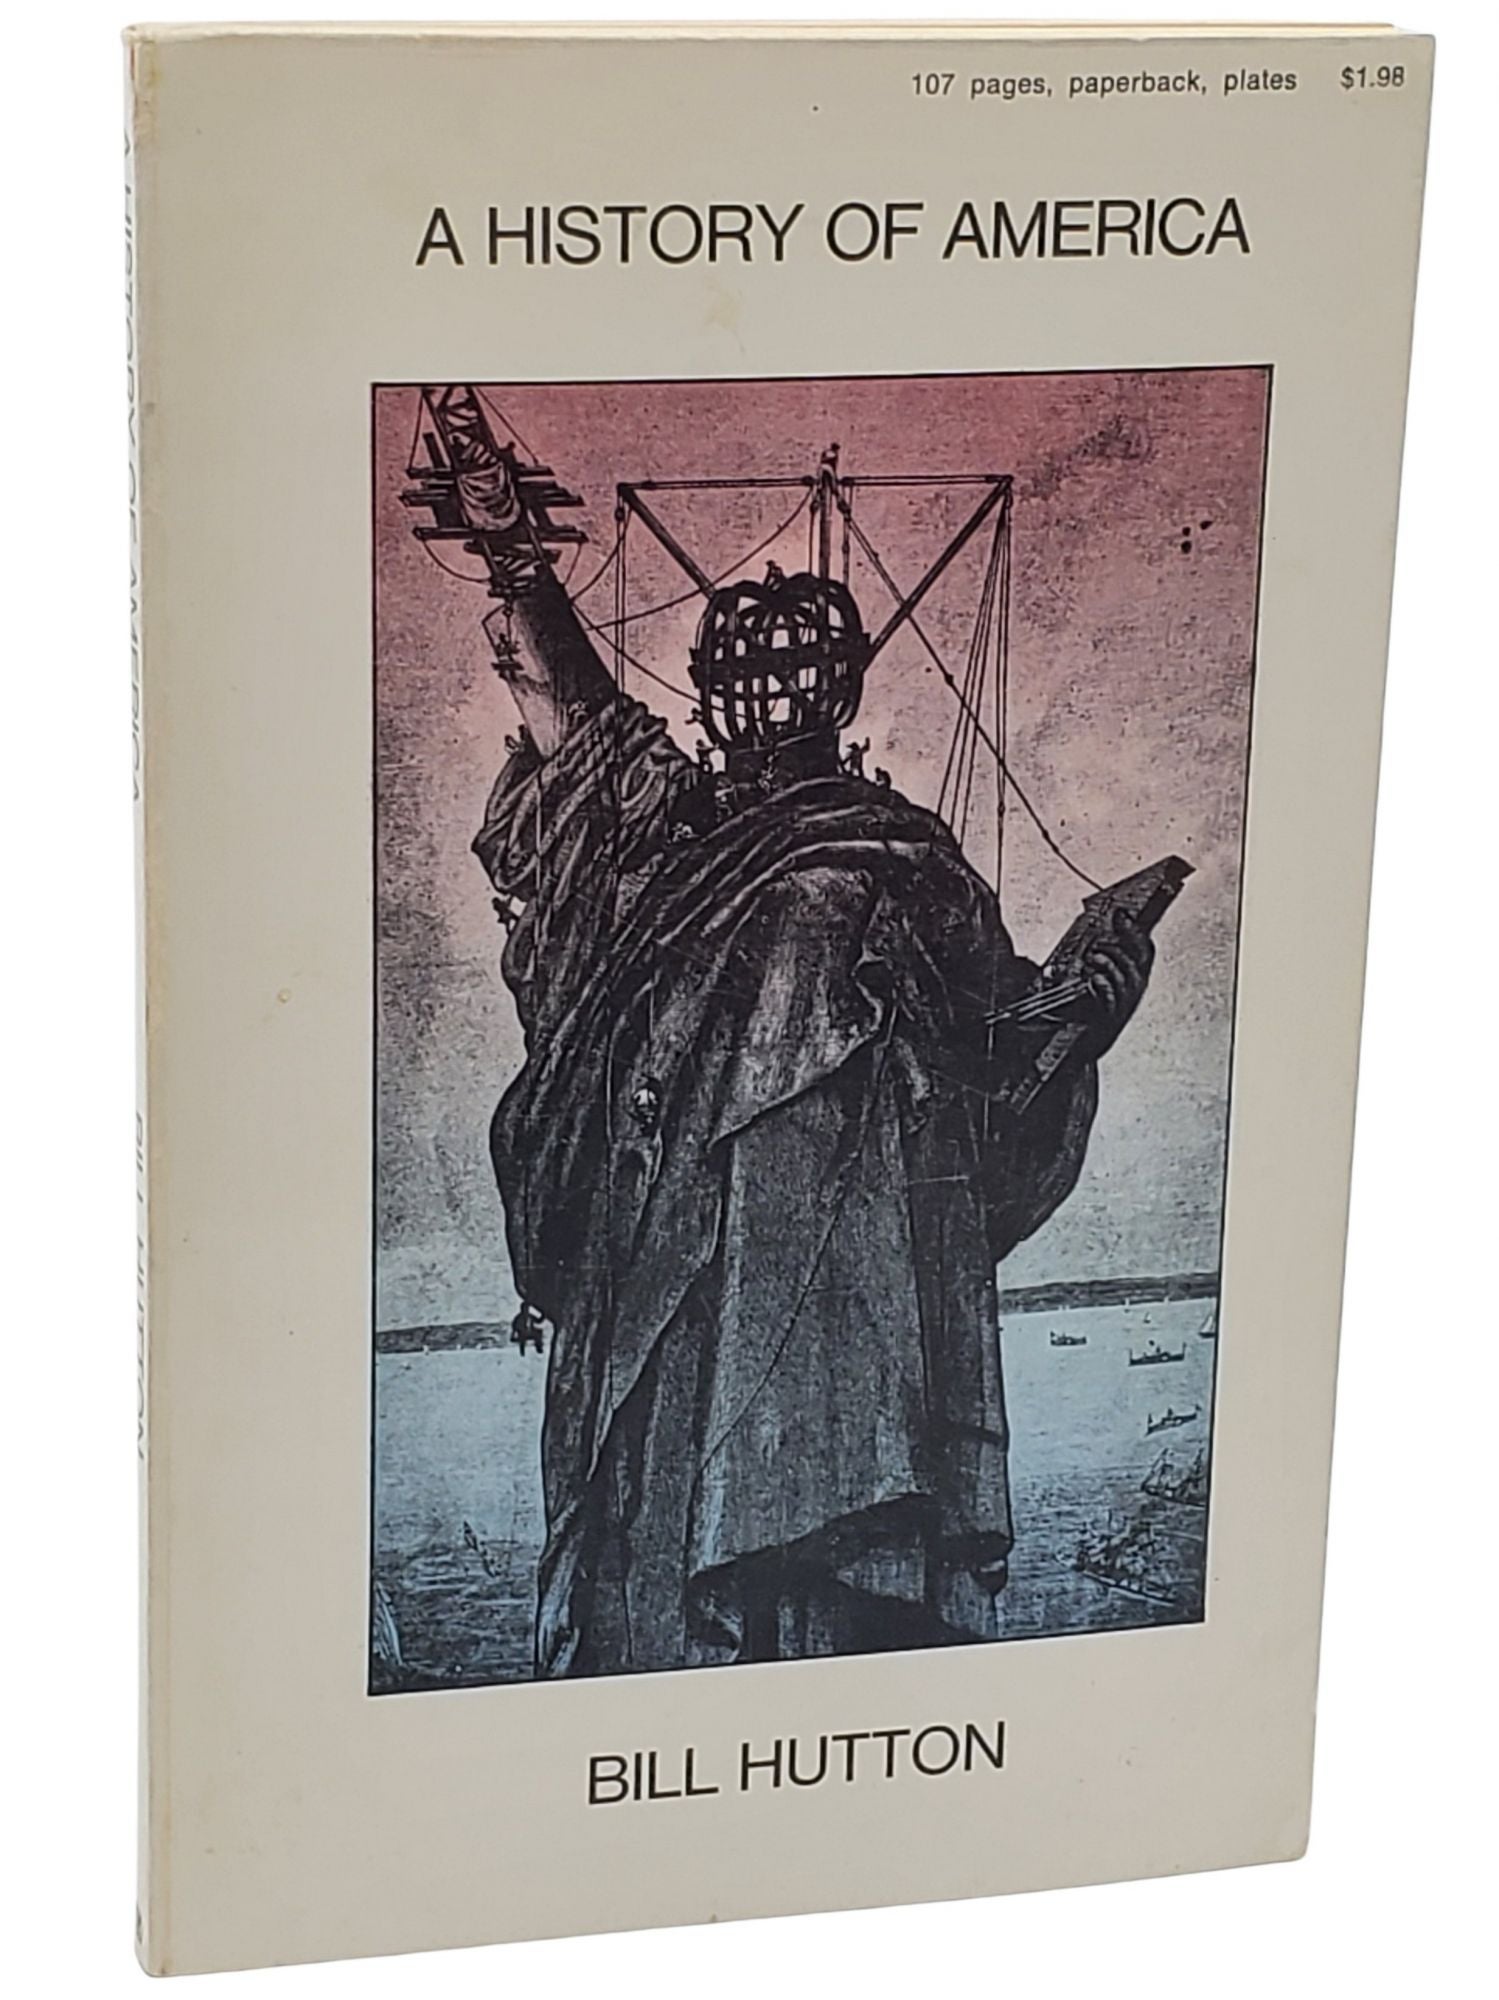 [Book #50630] A HISTORY OF AMERICA. Bill Hutton.